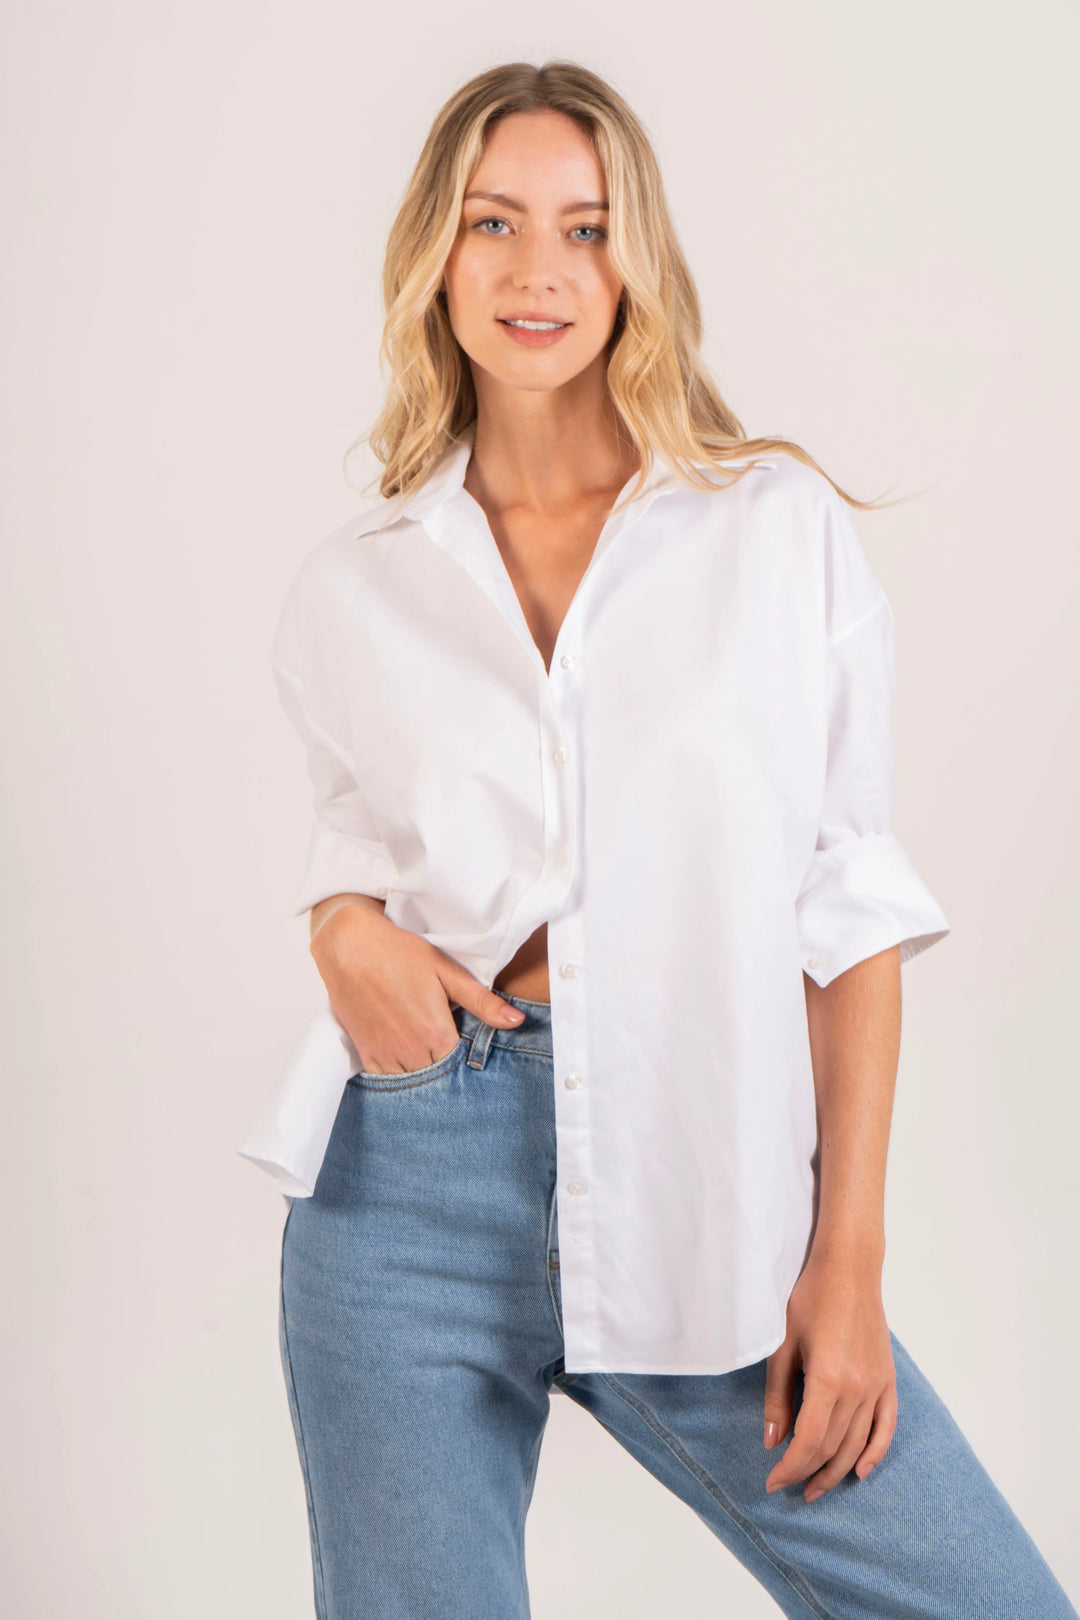 Camisa oversized blanca para mujer. una prenda que equilibra comodidad y estilo de manera natural